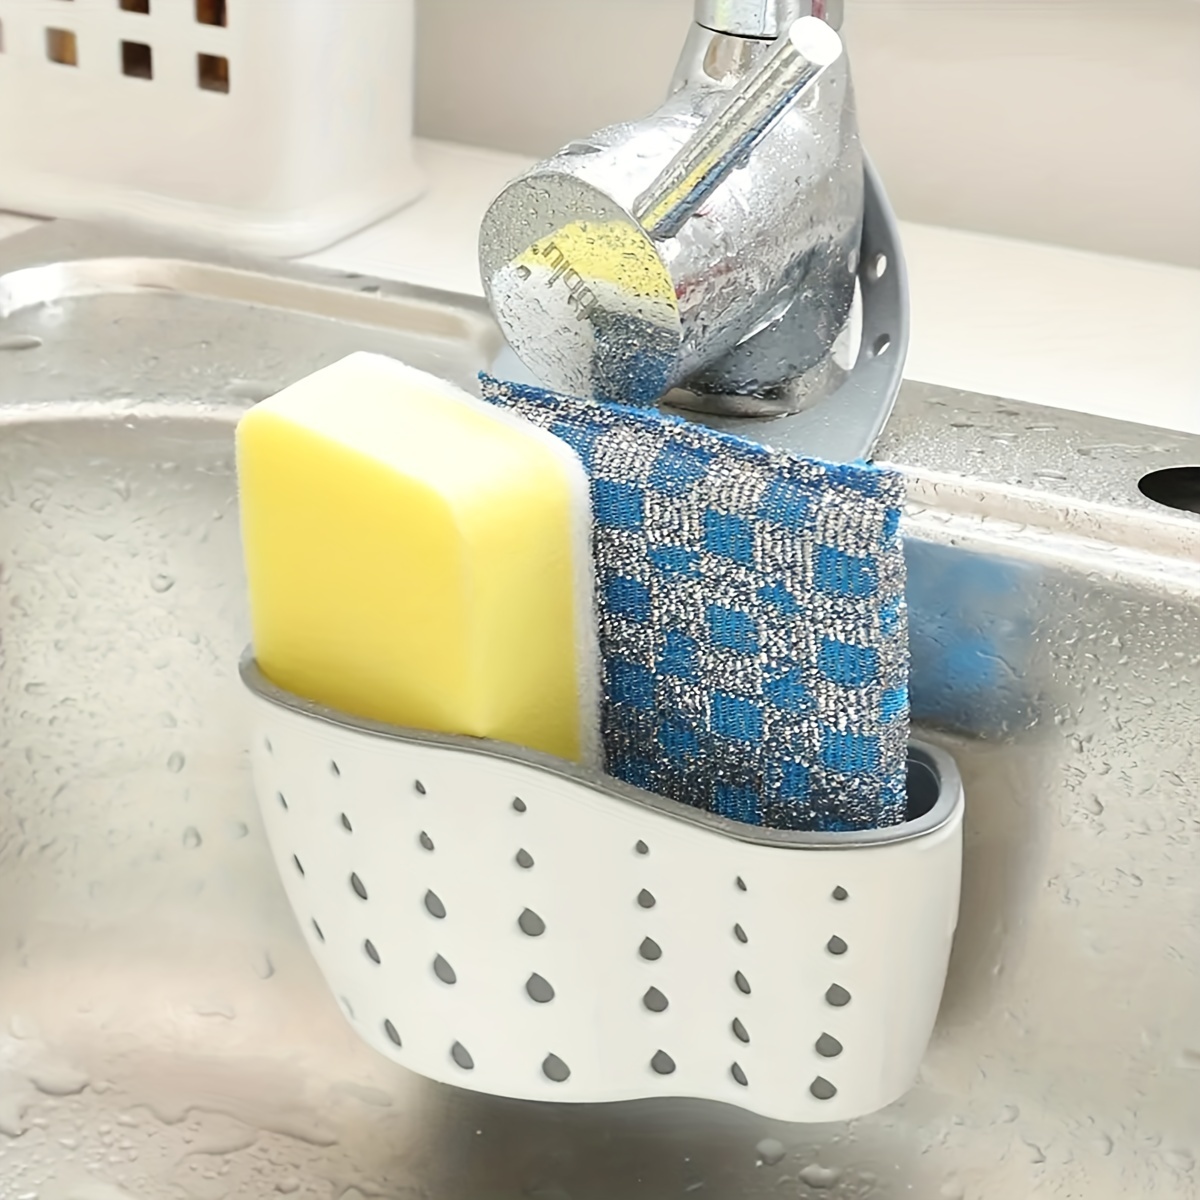 HUMUTA 3 in 1 sponge holder for kitchen sink, stainless steel in sink  sponge caddy/organizer